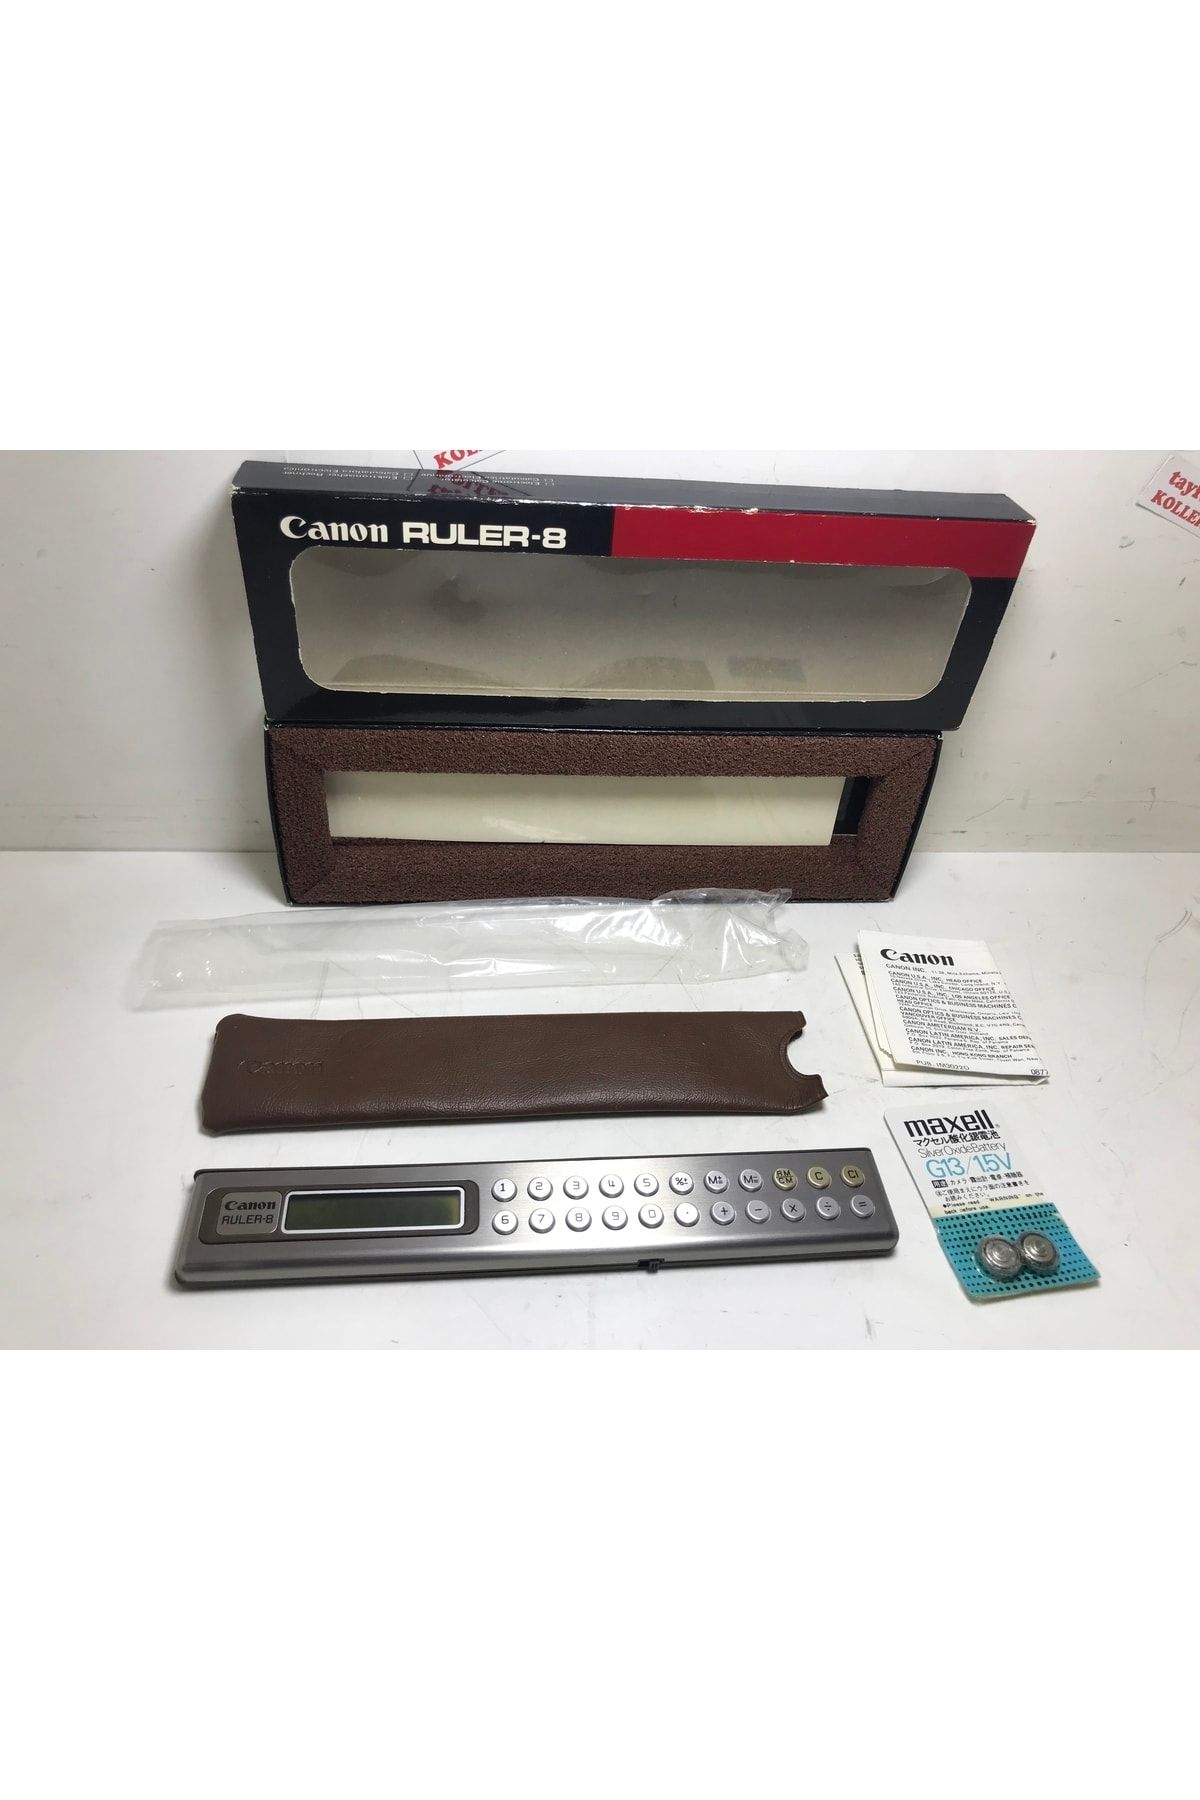 Canon Ruler-8 Made In Japan Kutusunda Cetvelli Hesap Makinası - Koleksiyon Ürünü